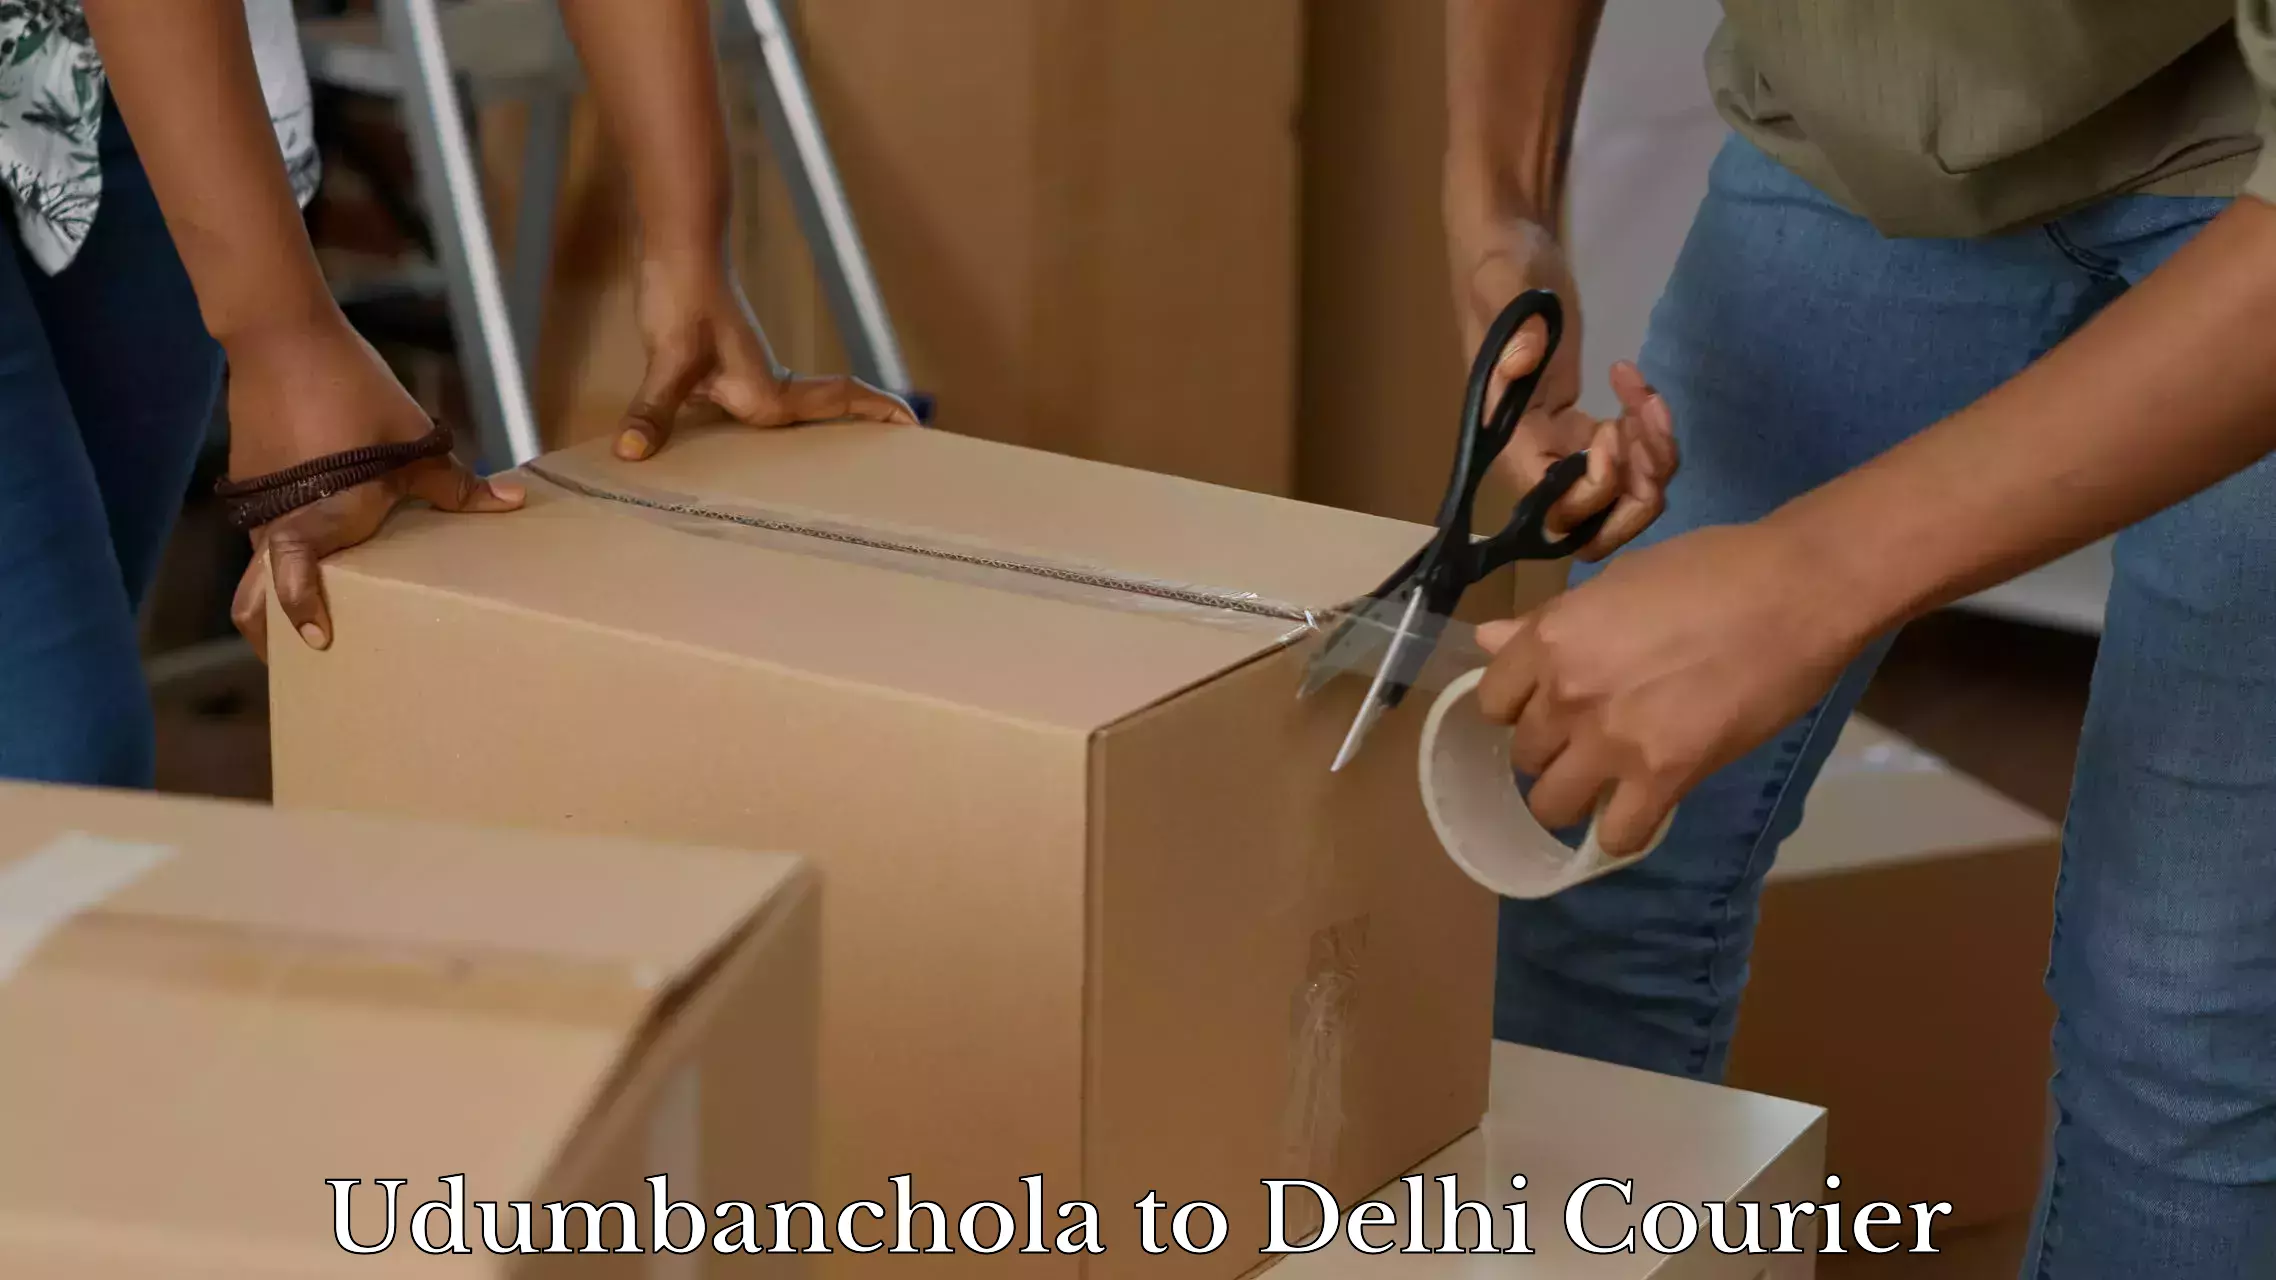 Luggage dispatch service Udumbanchola to Delhi